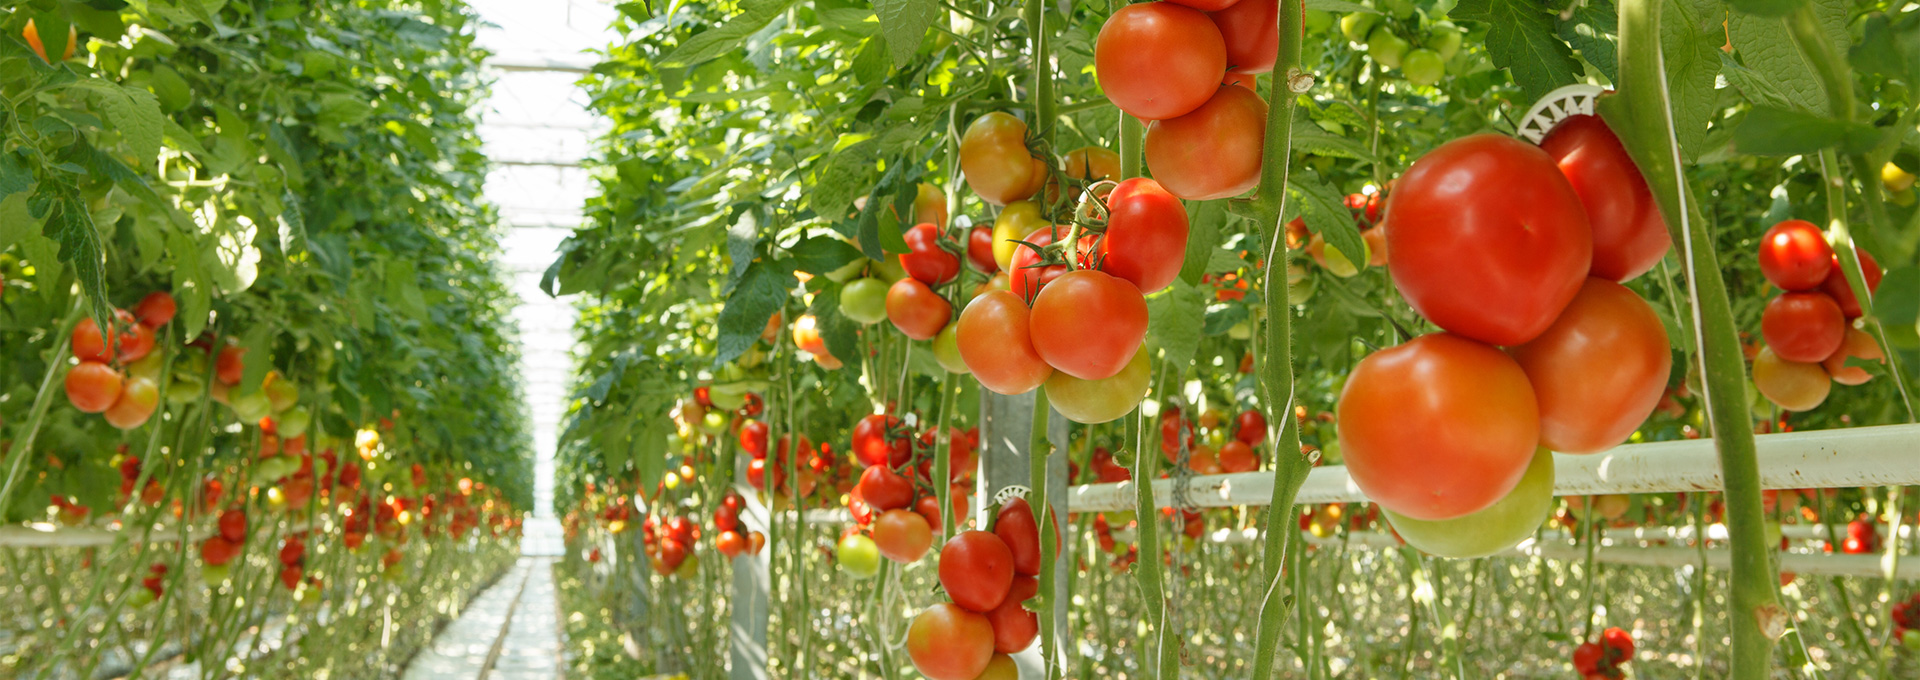 Home Rotator Tomatoes